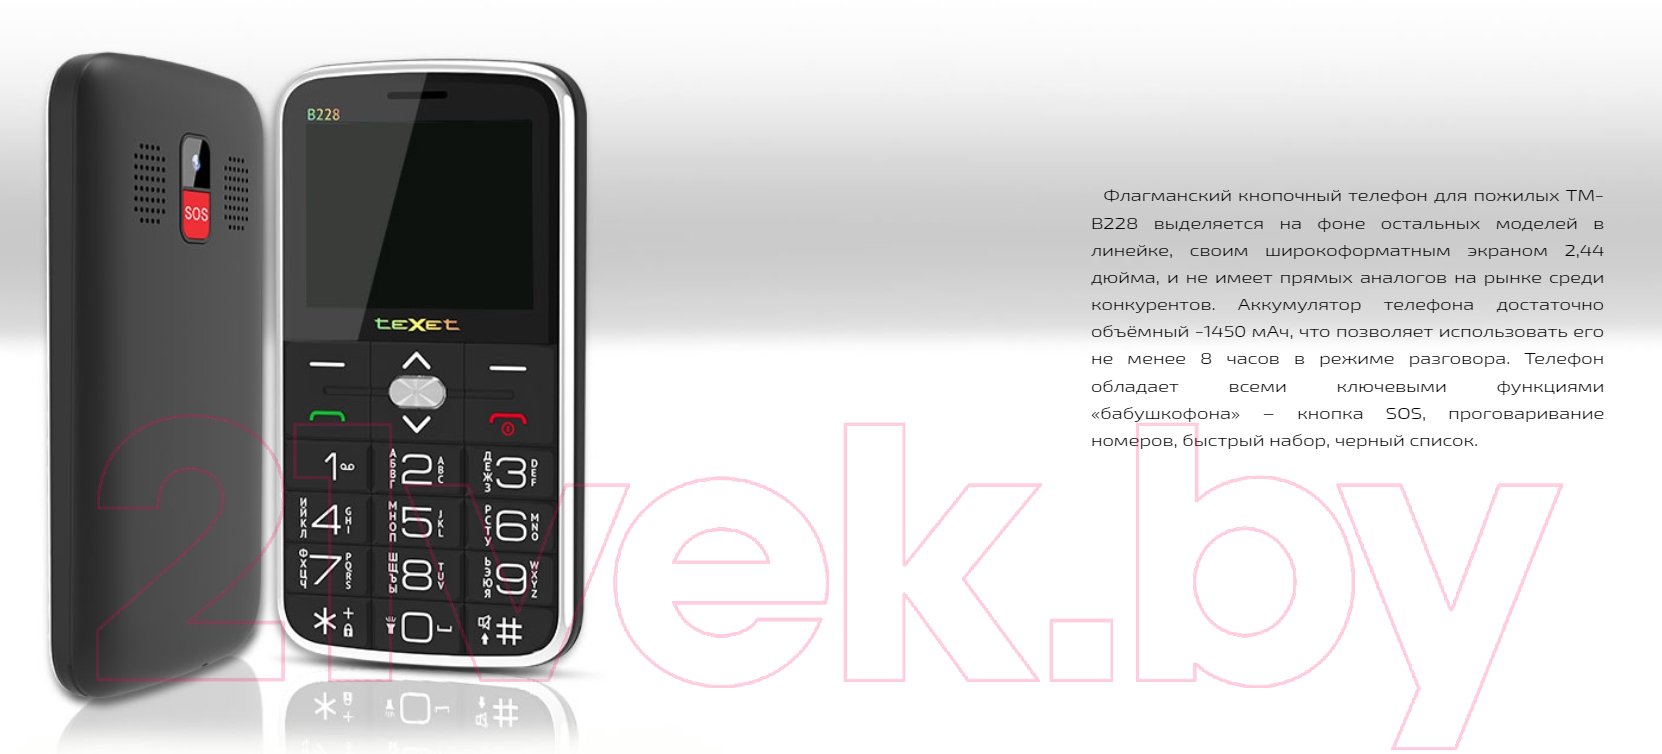 Мобильный телефон Texet TM-B228